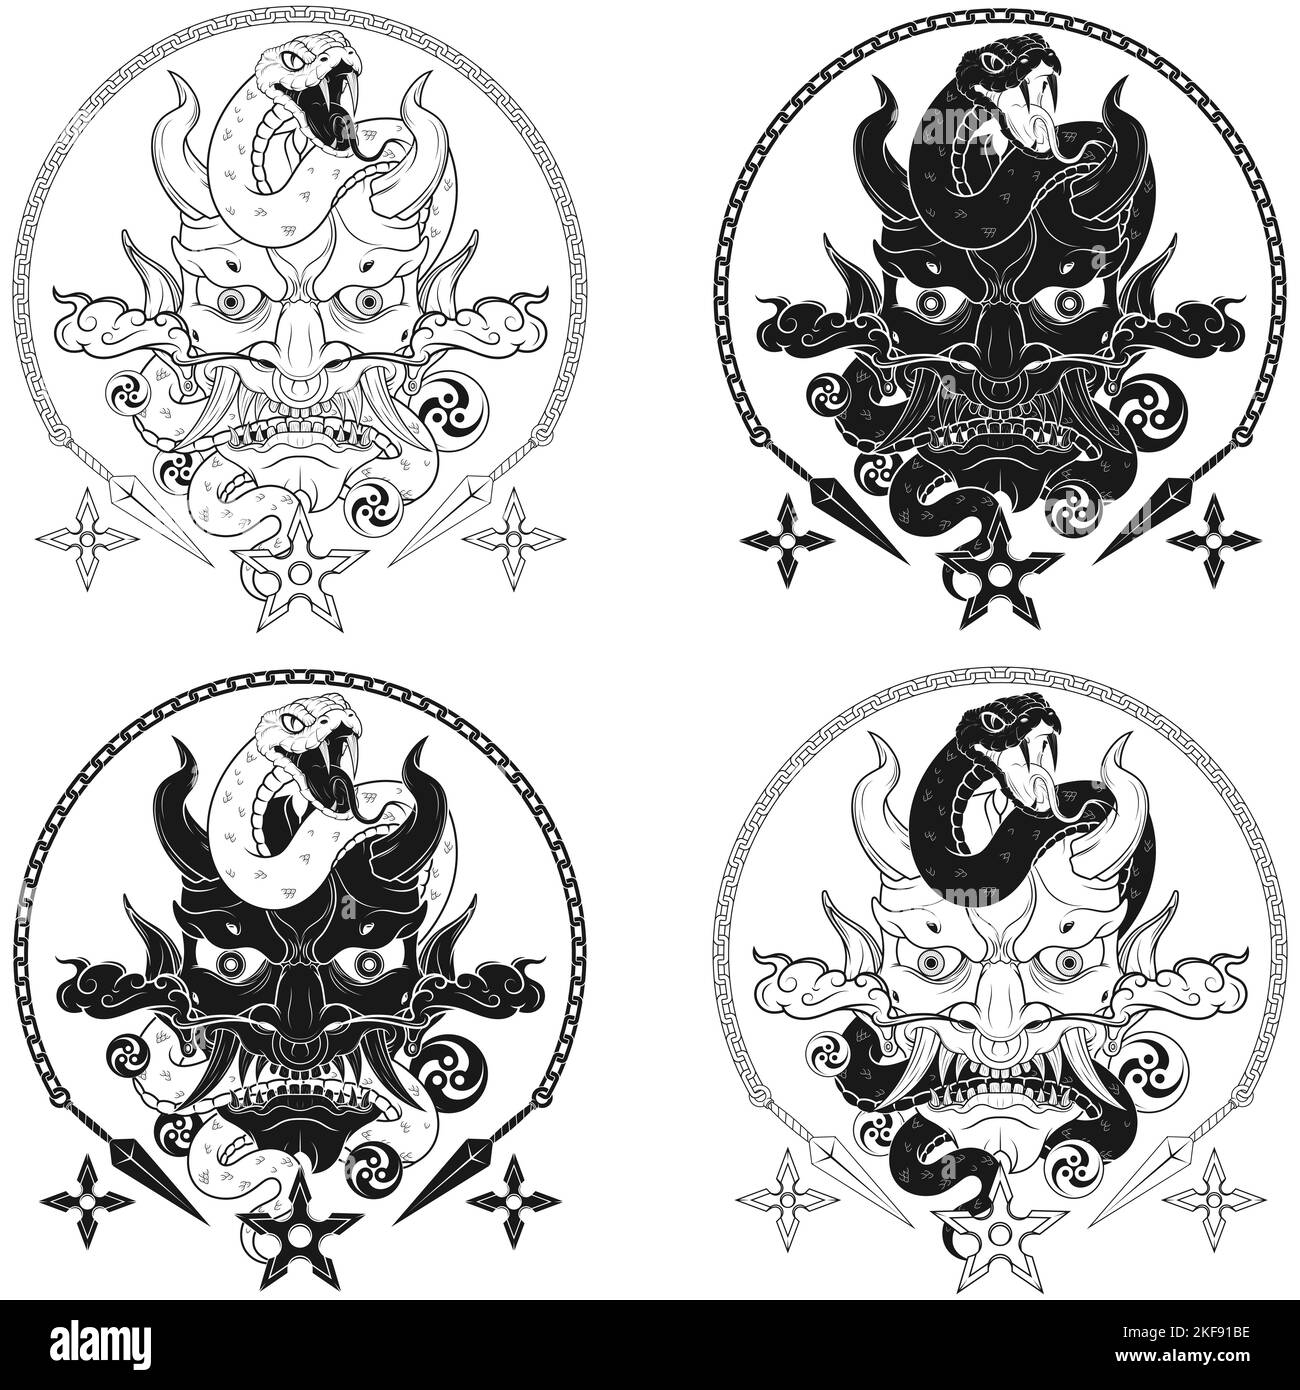 Japanisches traditionelles Dämon-Vektor-Design mit Schlange, Oni Japanischer Dämon Hannya Maske mit Schlangen Stock Vektor